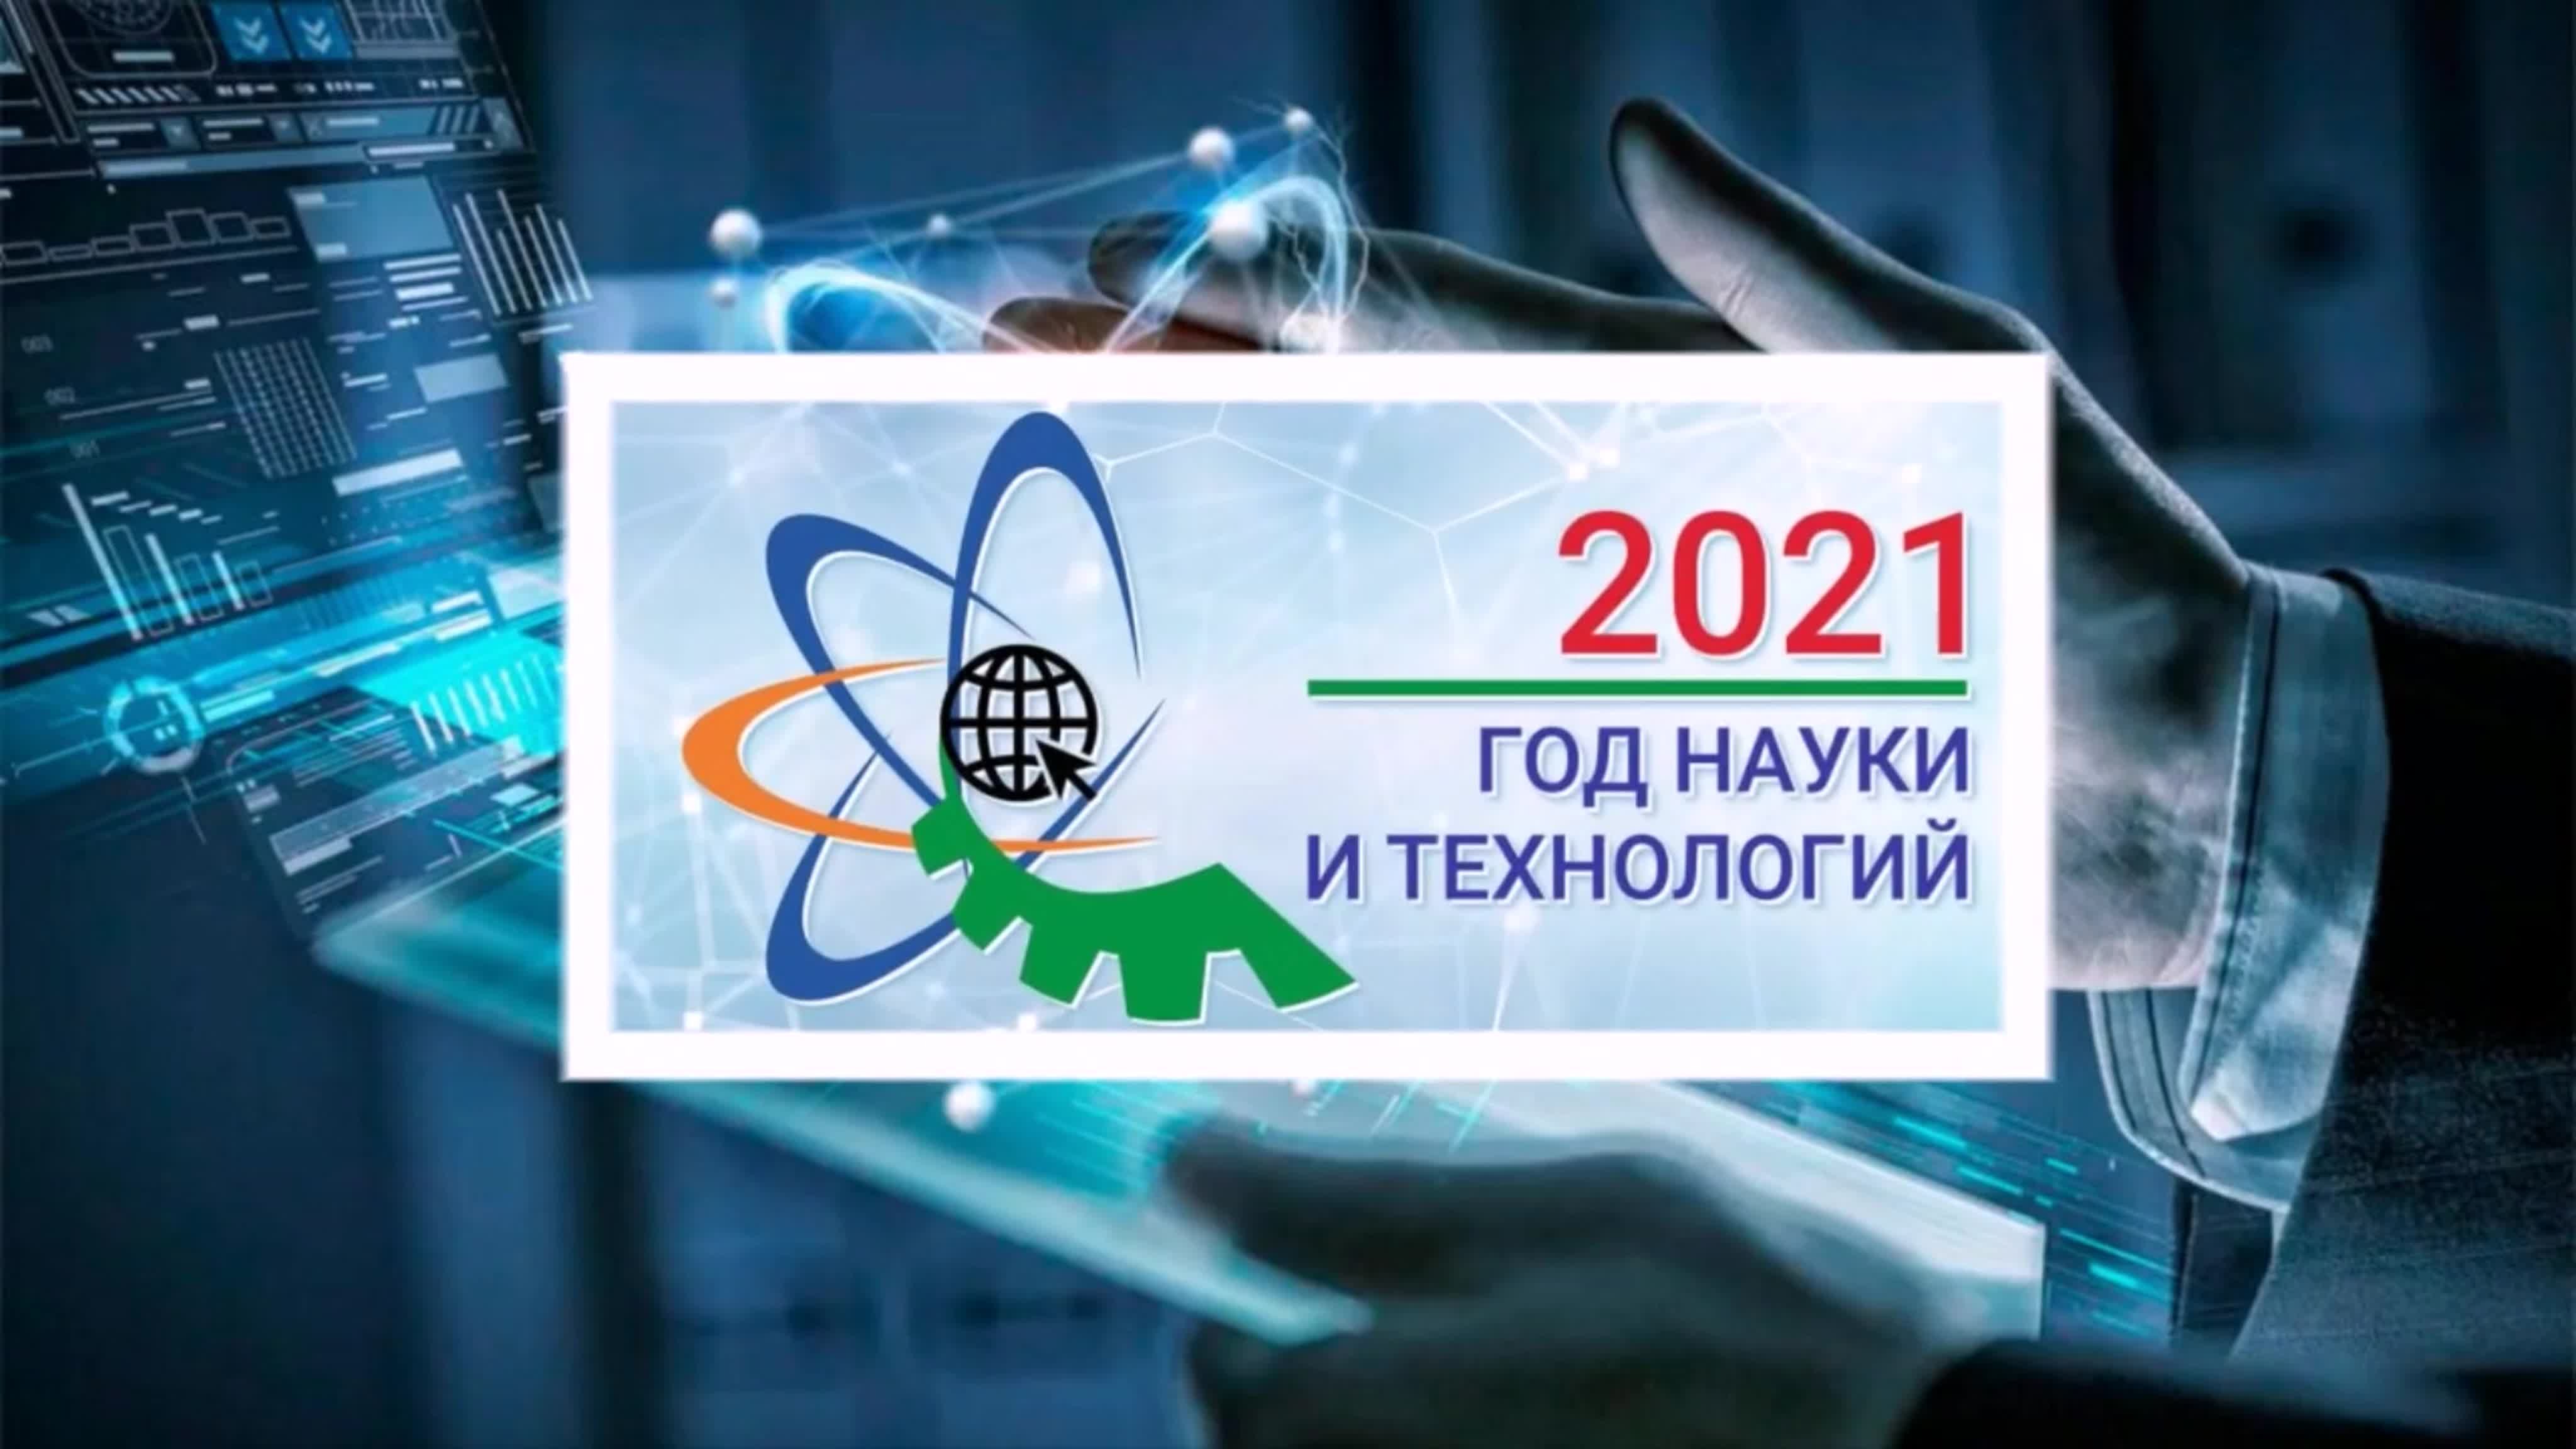 Год науки в библиотеке. Картинка год науки и технологий 2021. Год науки и технологий логотип. Наука лого. Год науки и технологий мероприятия в библиотеке.